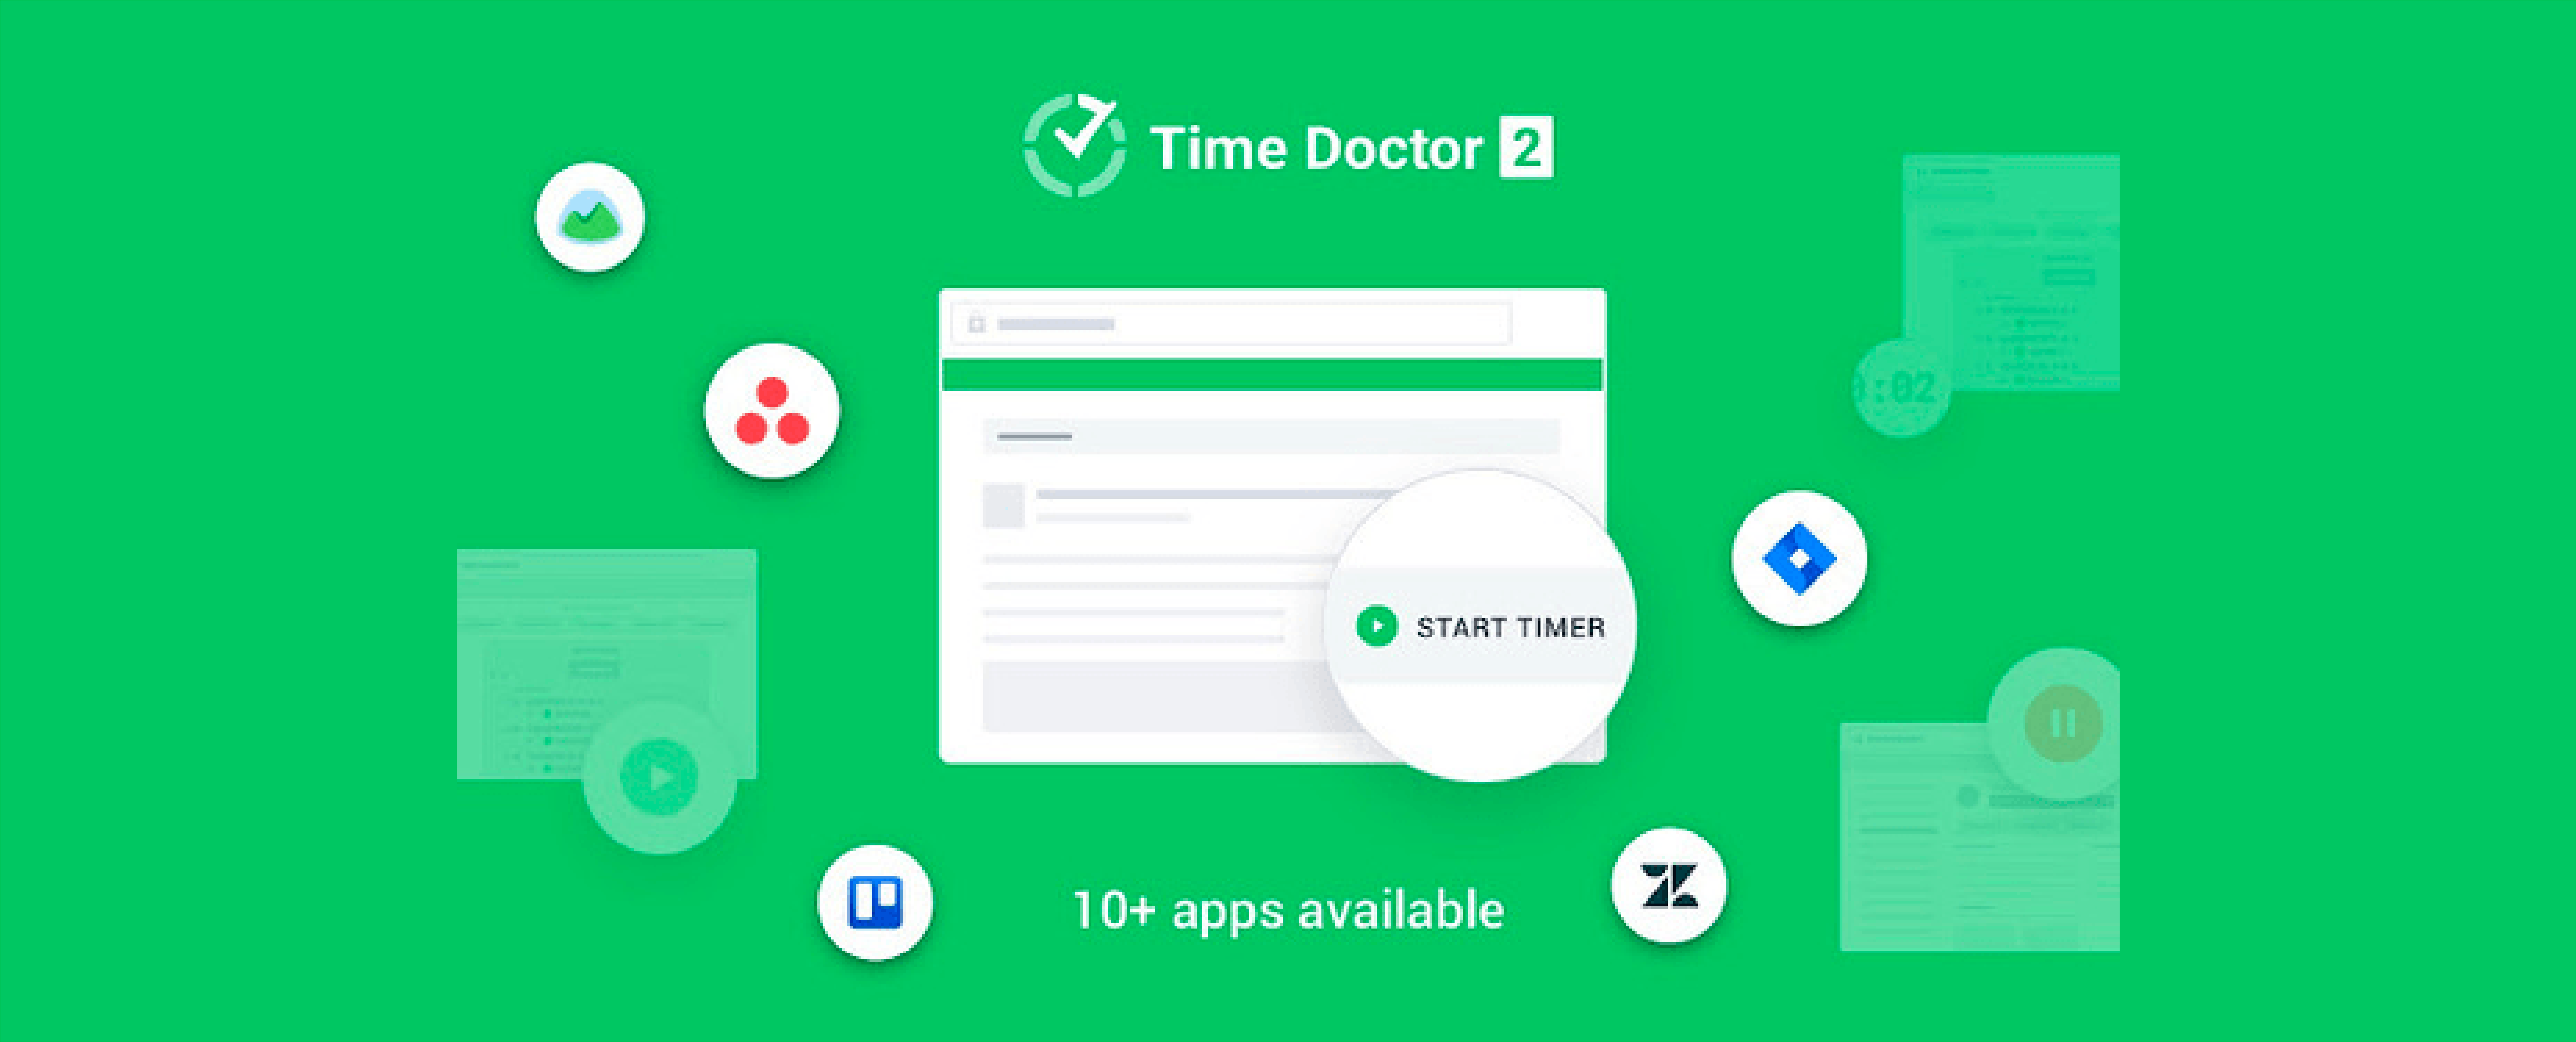 timedoctor app download